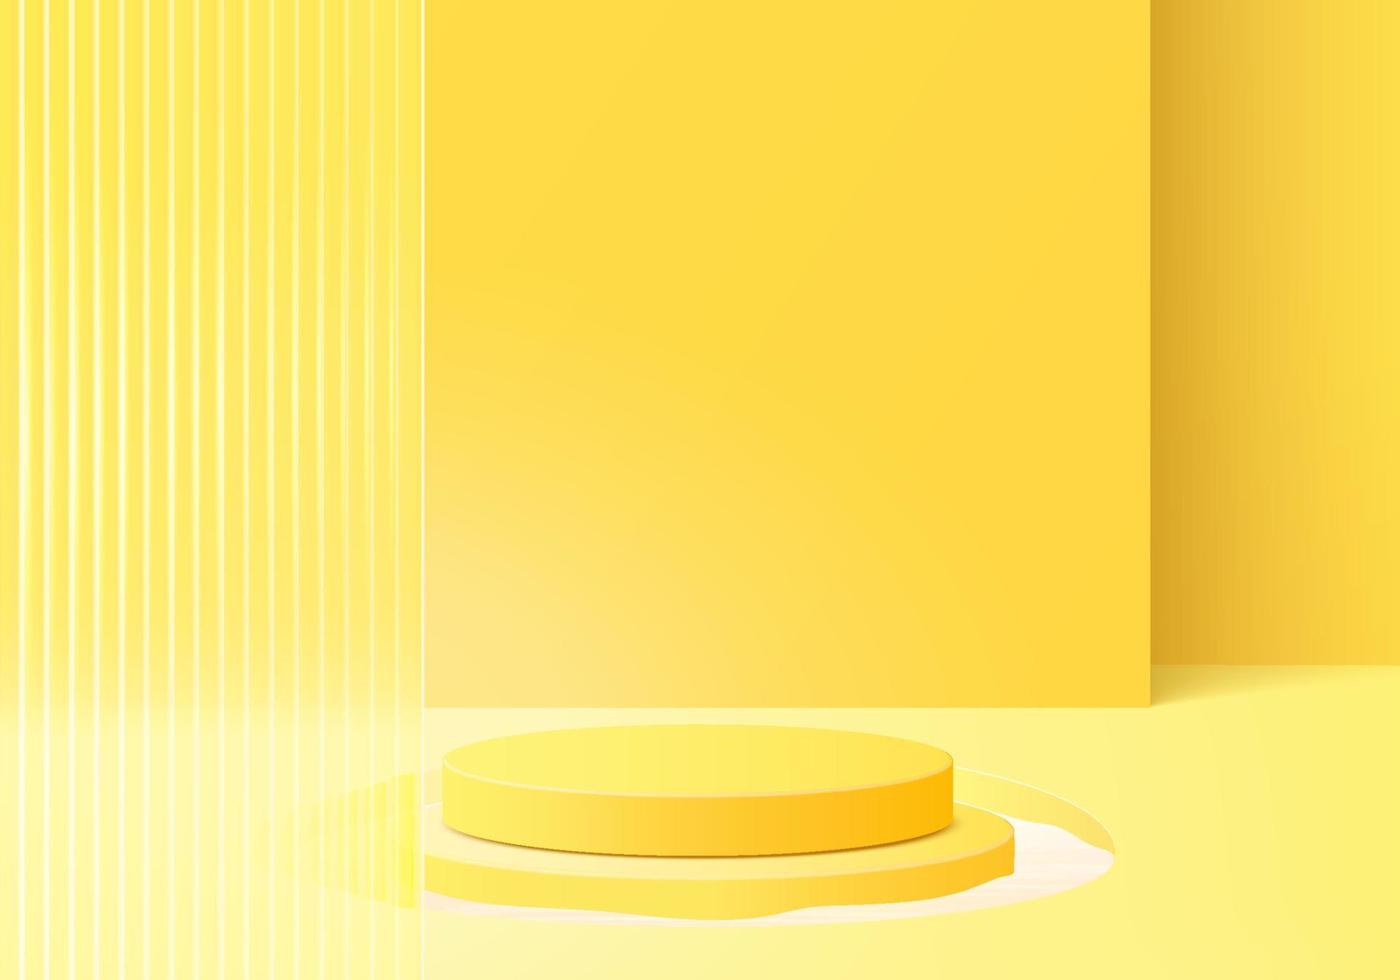 Plate-forme de fond 3D avec verre jaune moderne. vecteur de fond plate-forme de podium en cristal de rendu 3d. stand show produit cosmétique. vitrine de scène sur piédestal plate-forme de studio de verre moderne